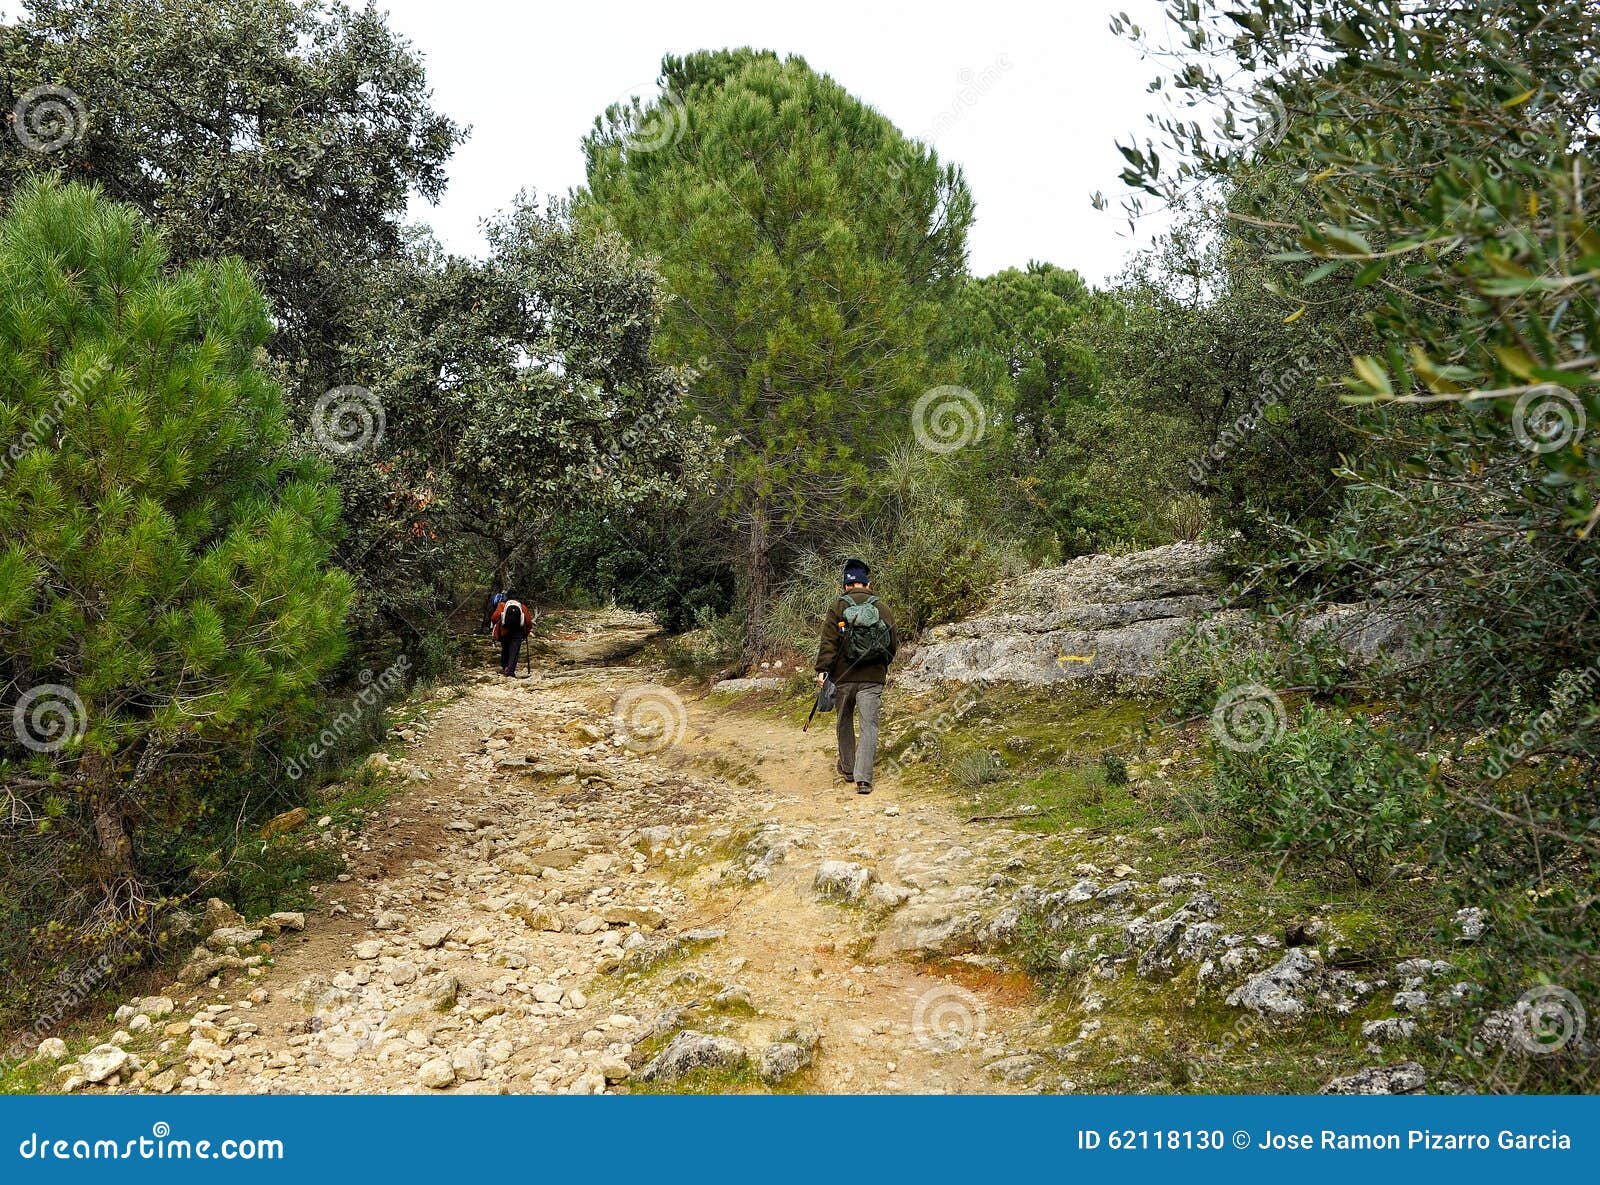 hikers in cerro muriano, cÃÂ³rdoba province, spain